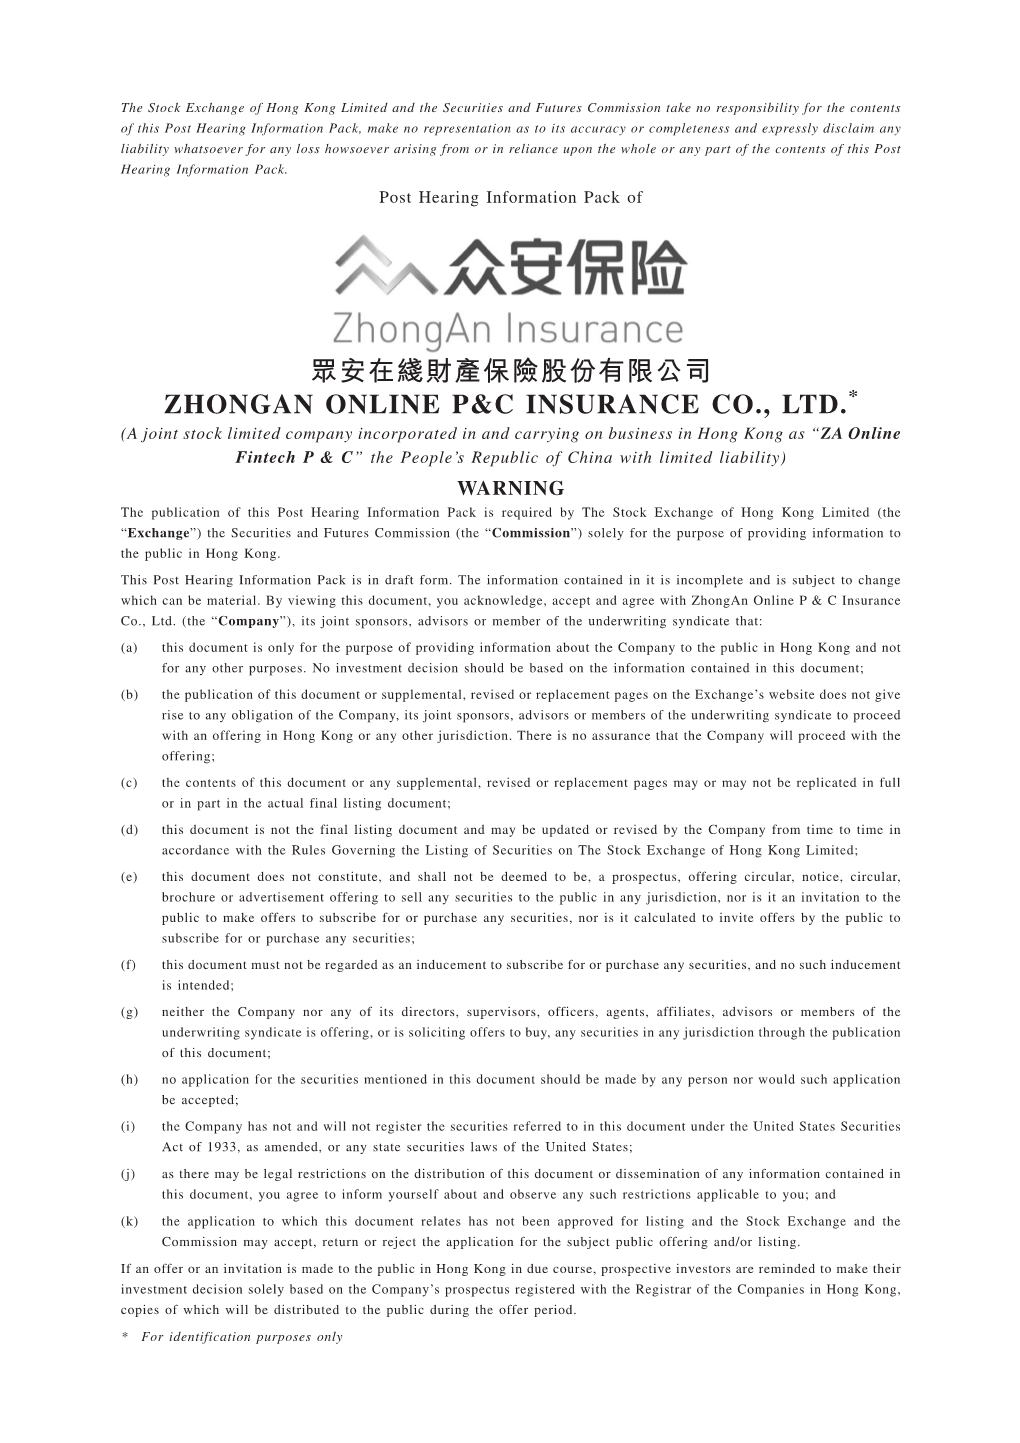 眾安在綫財產保險股份有限公司 Zhongan Online